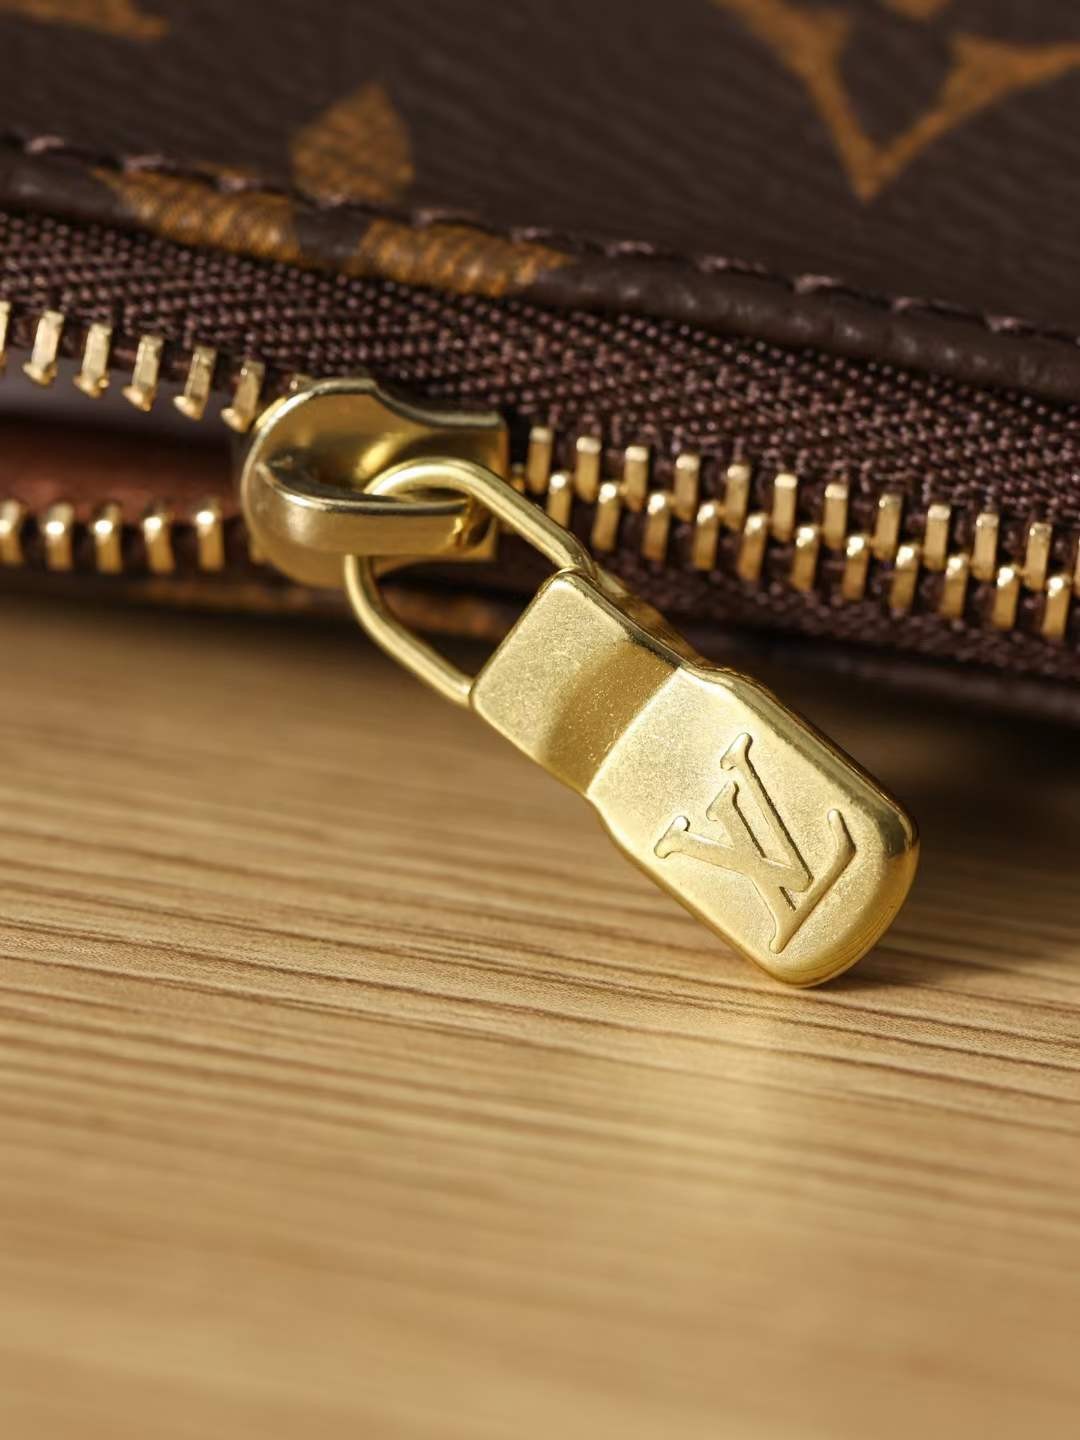 Louis Vuitton M40712 Pochette Accessoires top replica bag 23.5 x 13.5 x 4 cm hardware details (2022 Edition)-Best Quality Fake designer Bag Review, Replica designer bag ru